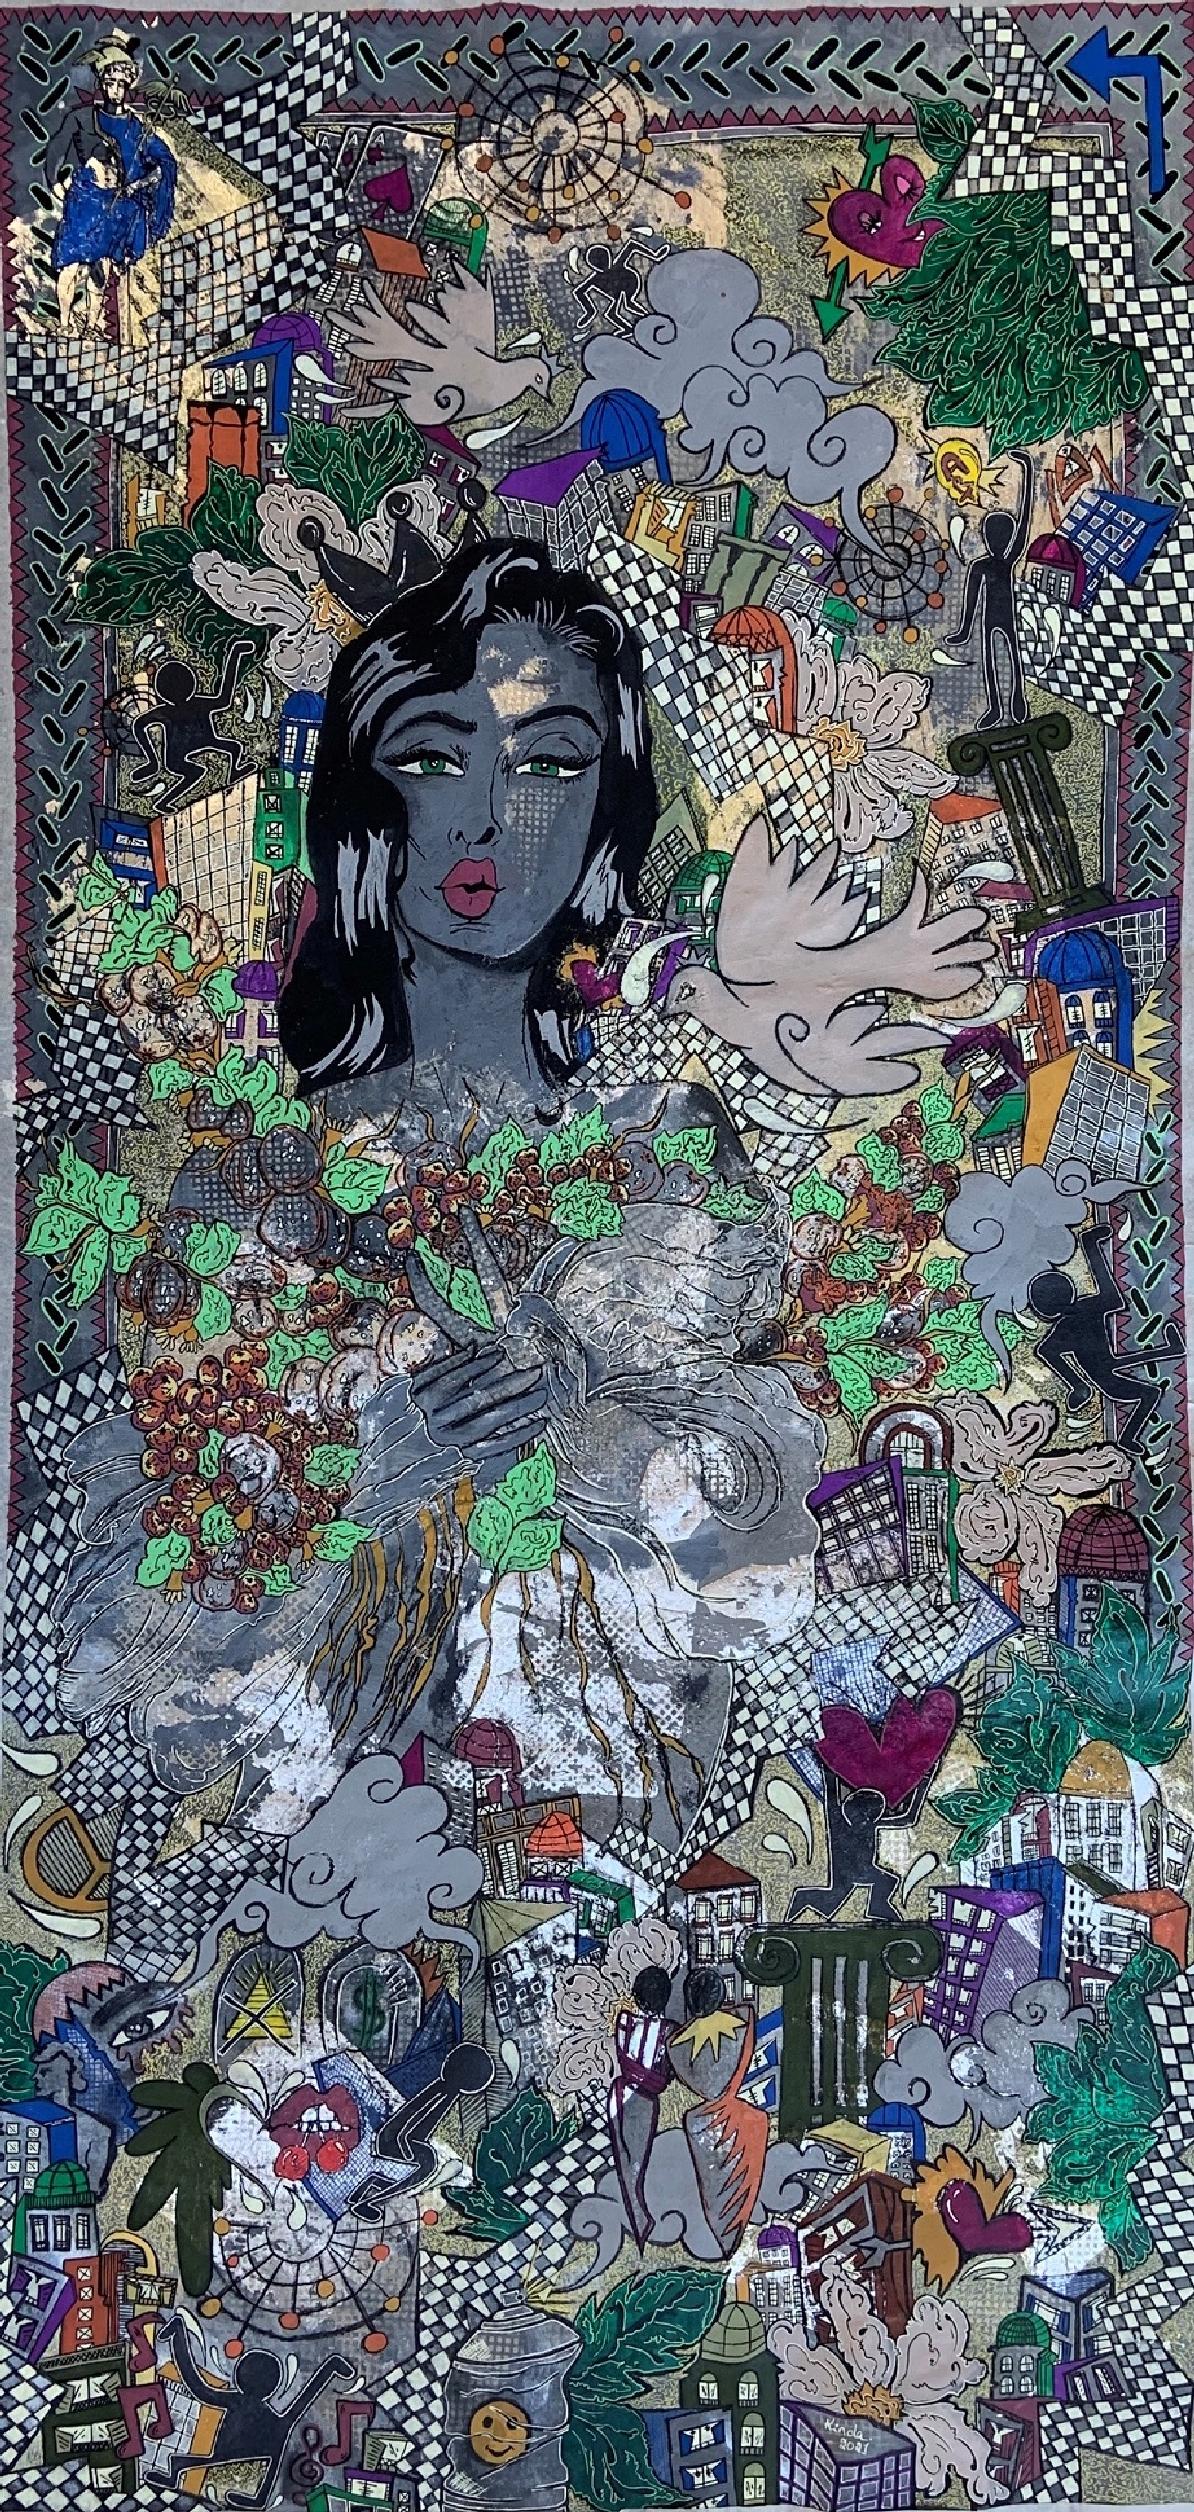 "Utopische Vision" Gemälde 61" x 30" Zoll von Kinda Adly

Kinda Adly, 1989 in Ägypten geboren, ist ein Autodidakt. Sie wuchs in Ägypten auf und lebt derzeit in der Schweiz.
Ihre Liebe zur Kunst hat sie dazu inspiriert, Farben durch verschiedene